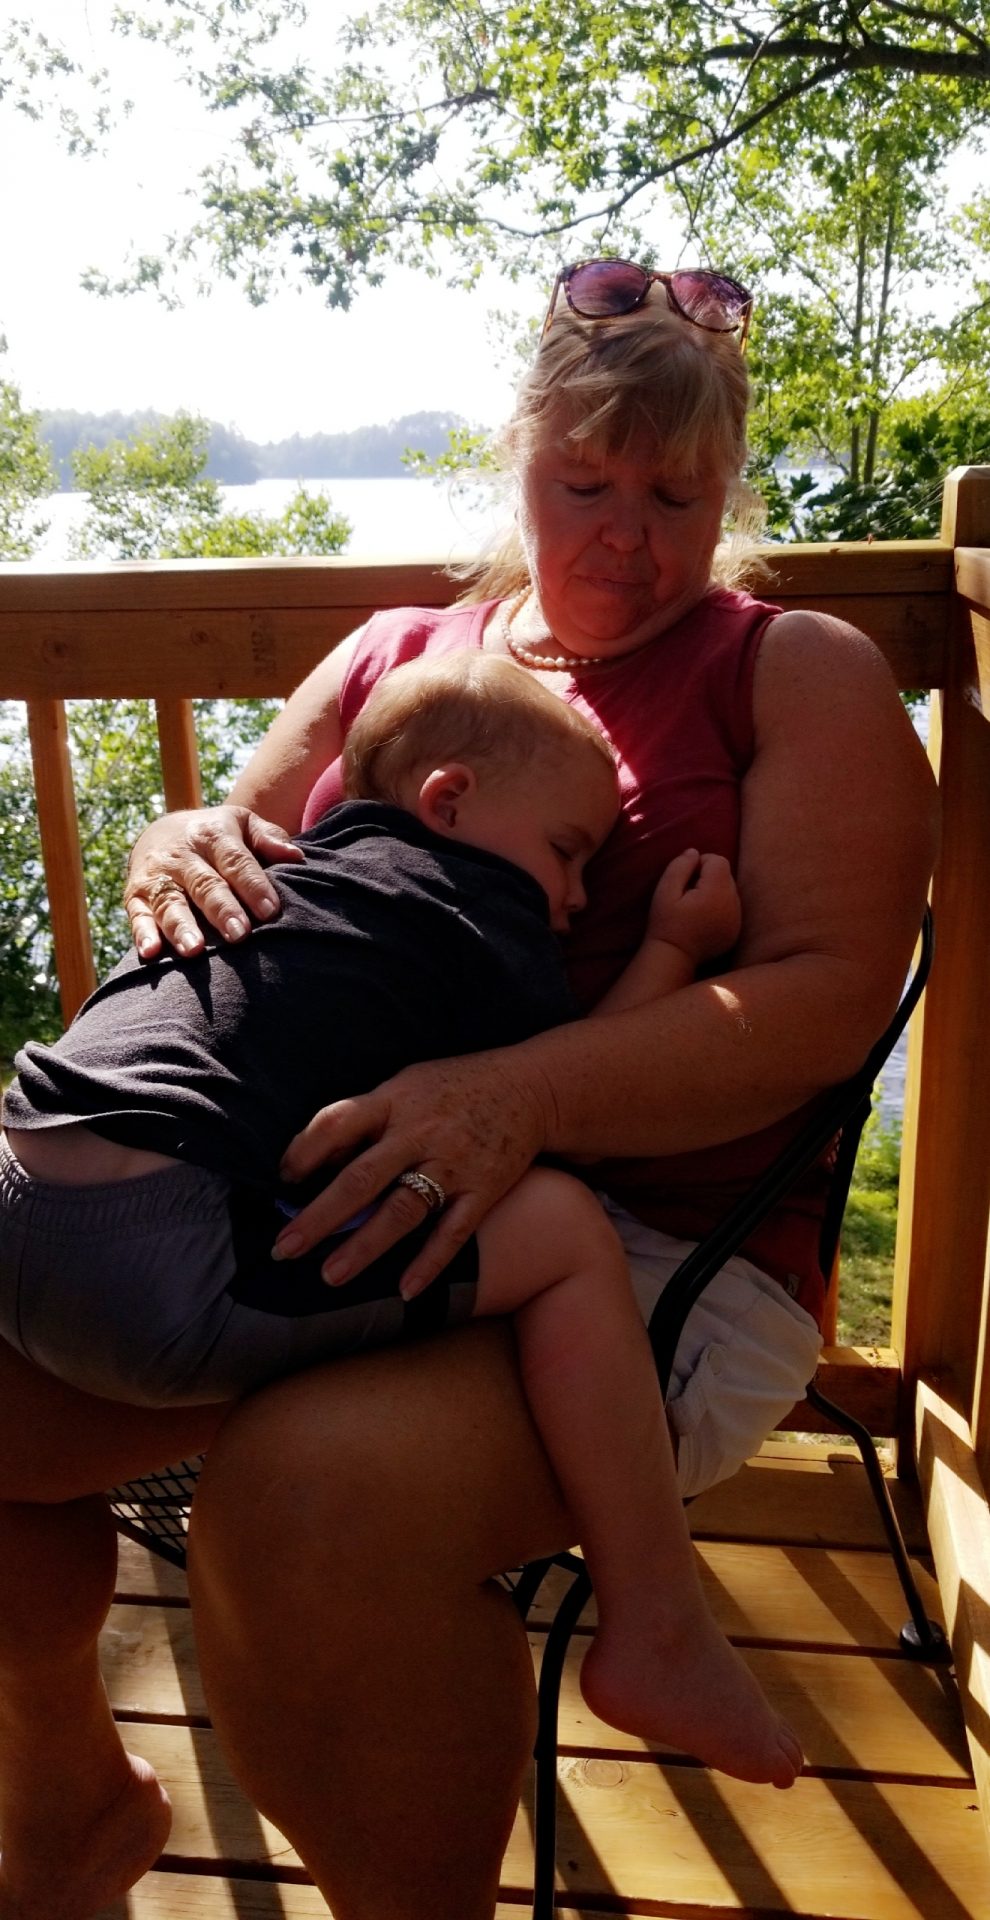 Holding her sleeping grandson